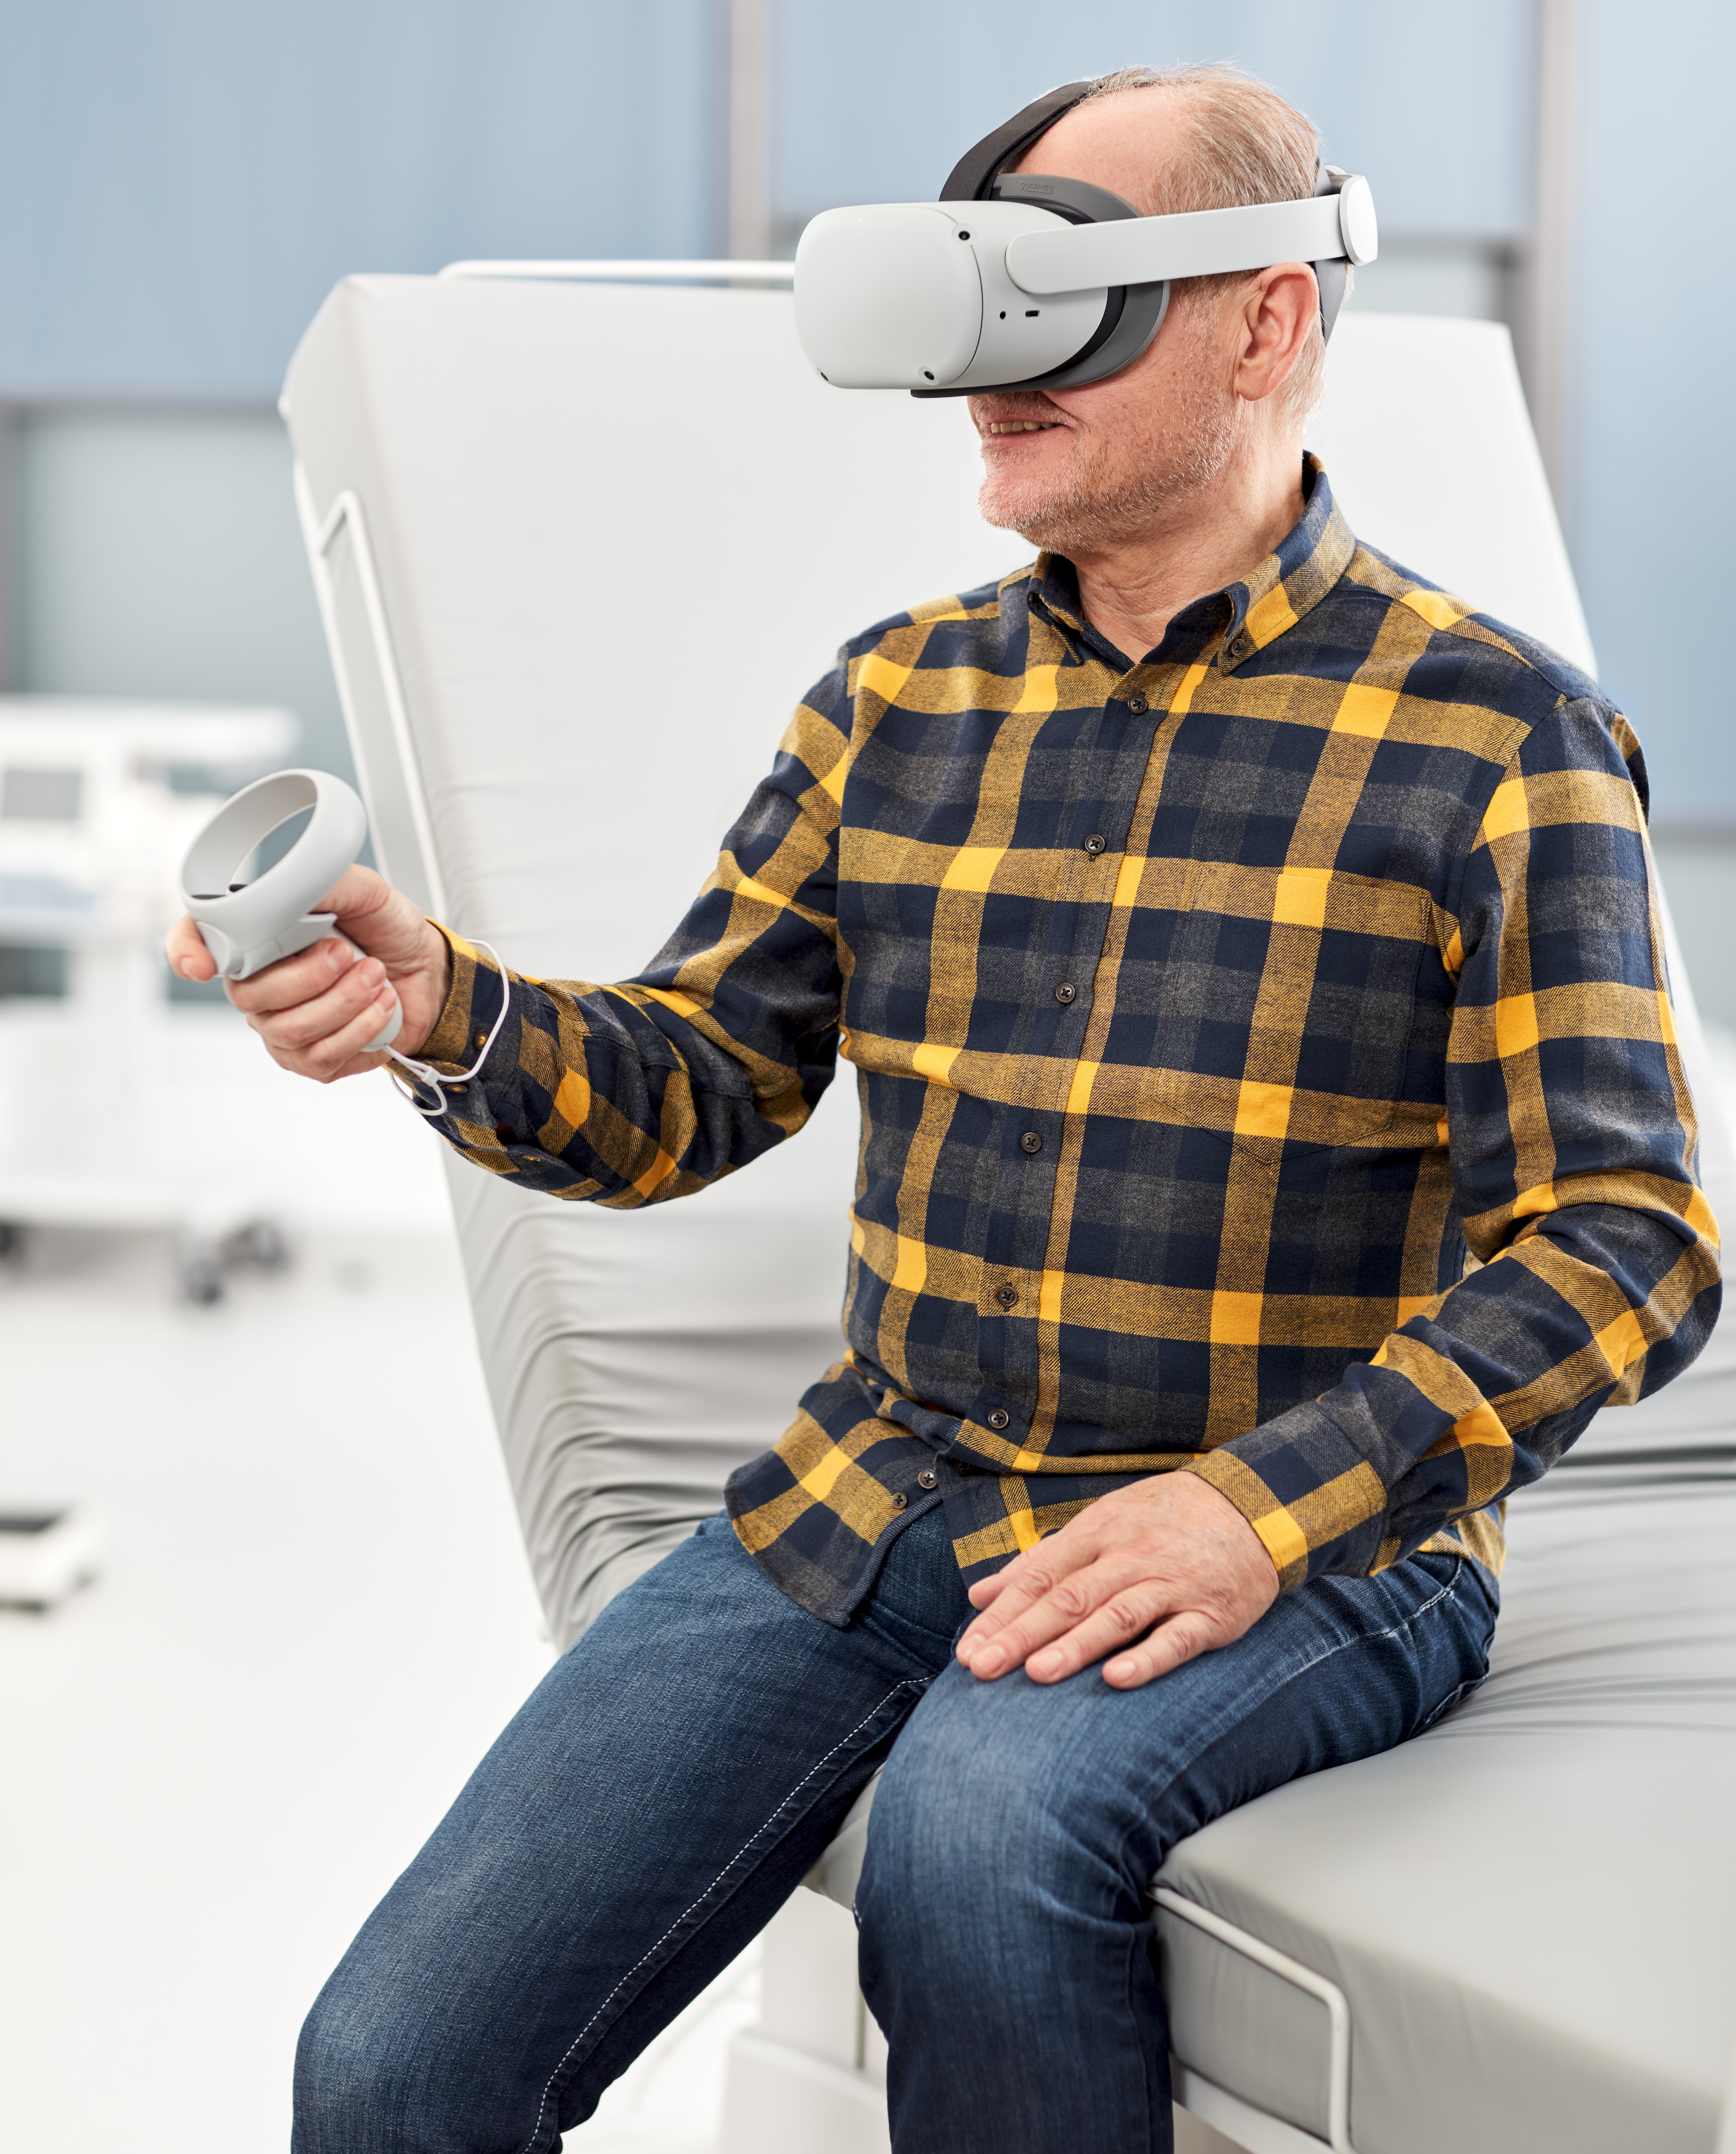 VR-patientutbildning på sjukhus